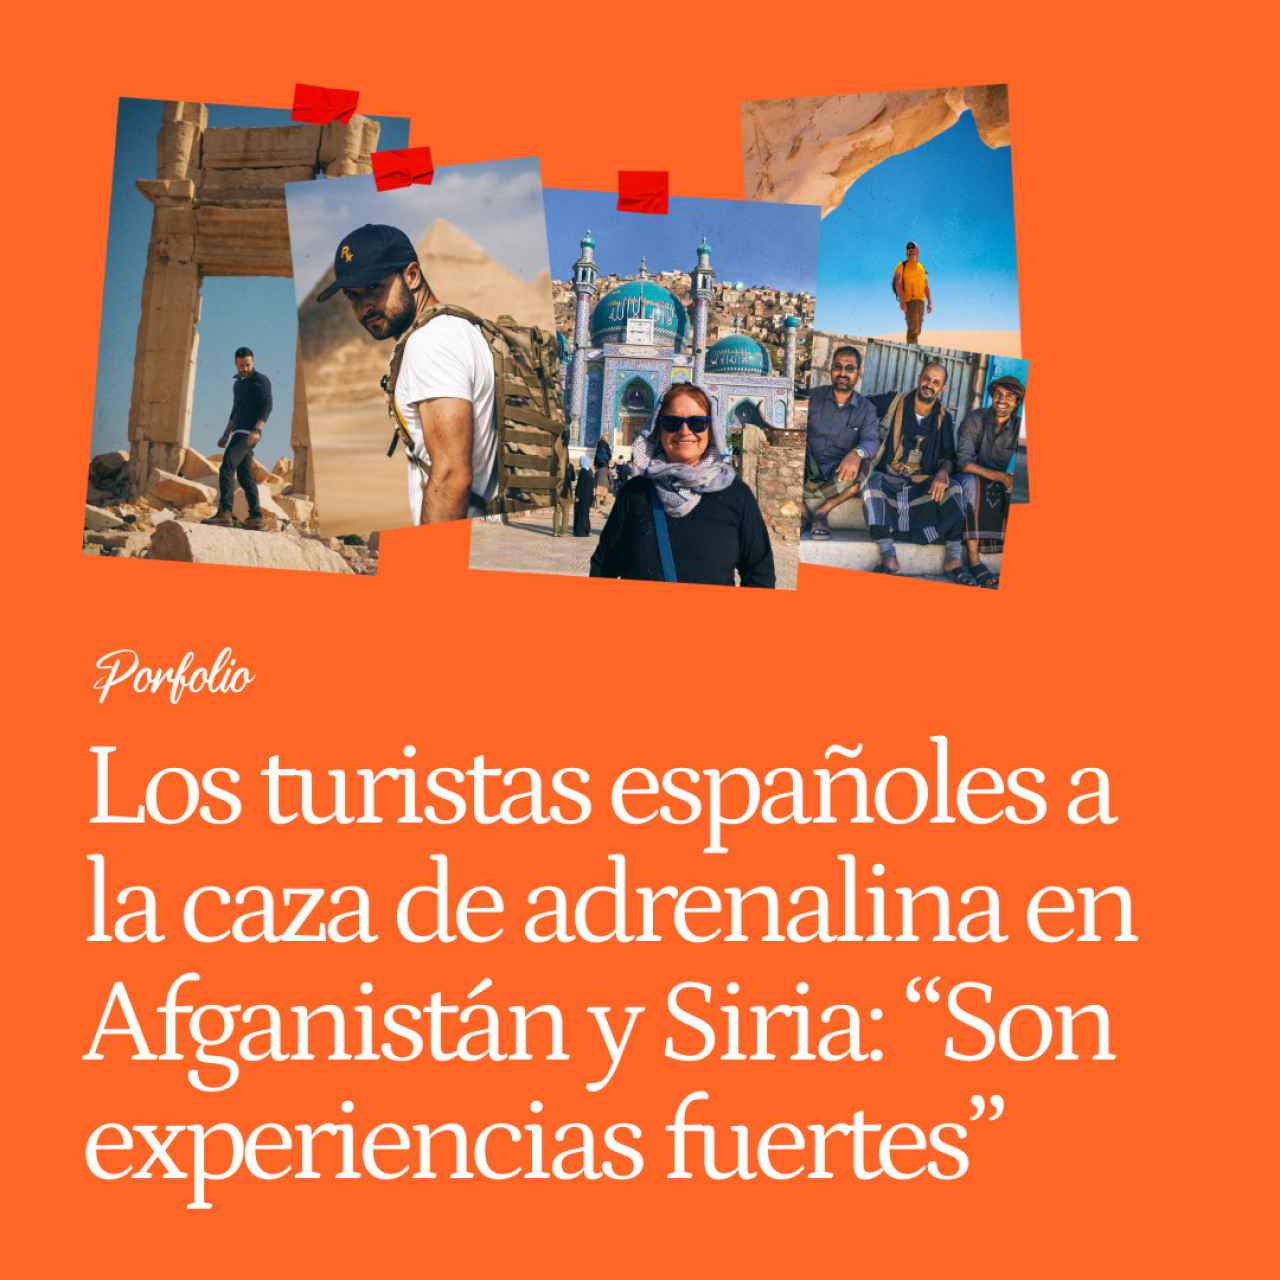 Los turistas españoles a la caza de adrenalina en Afganistán, Siria o Yemen: "Buscamos experiencias más fuertes"